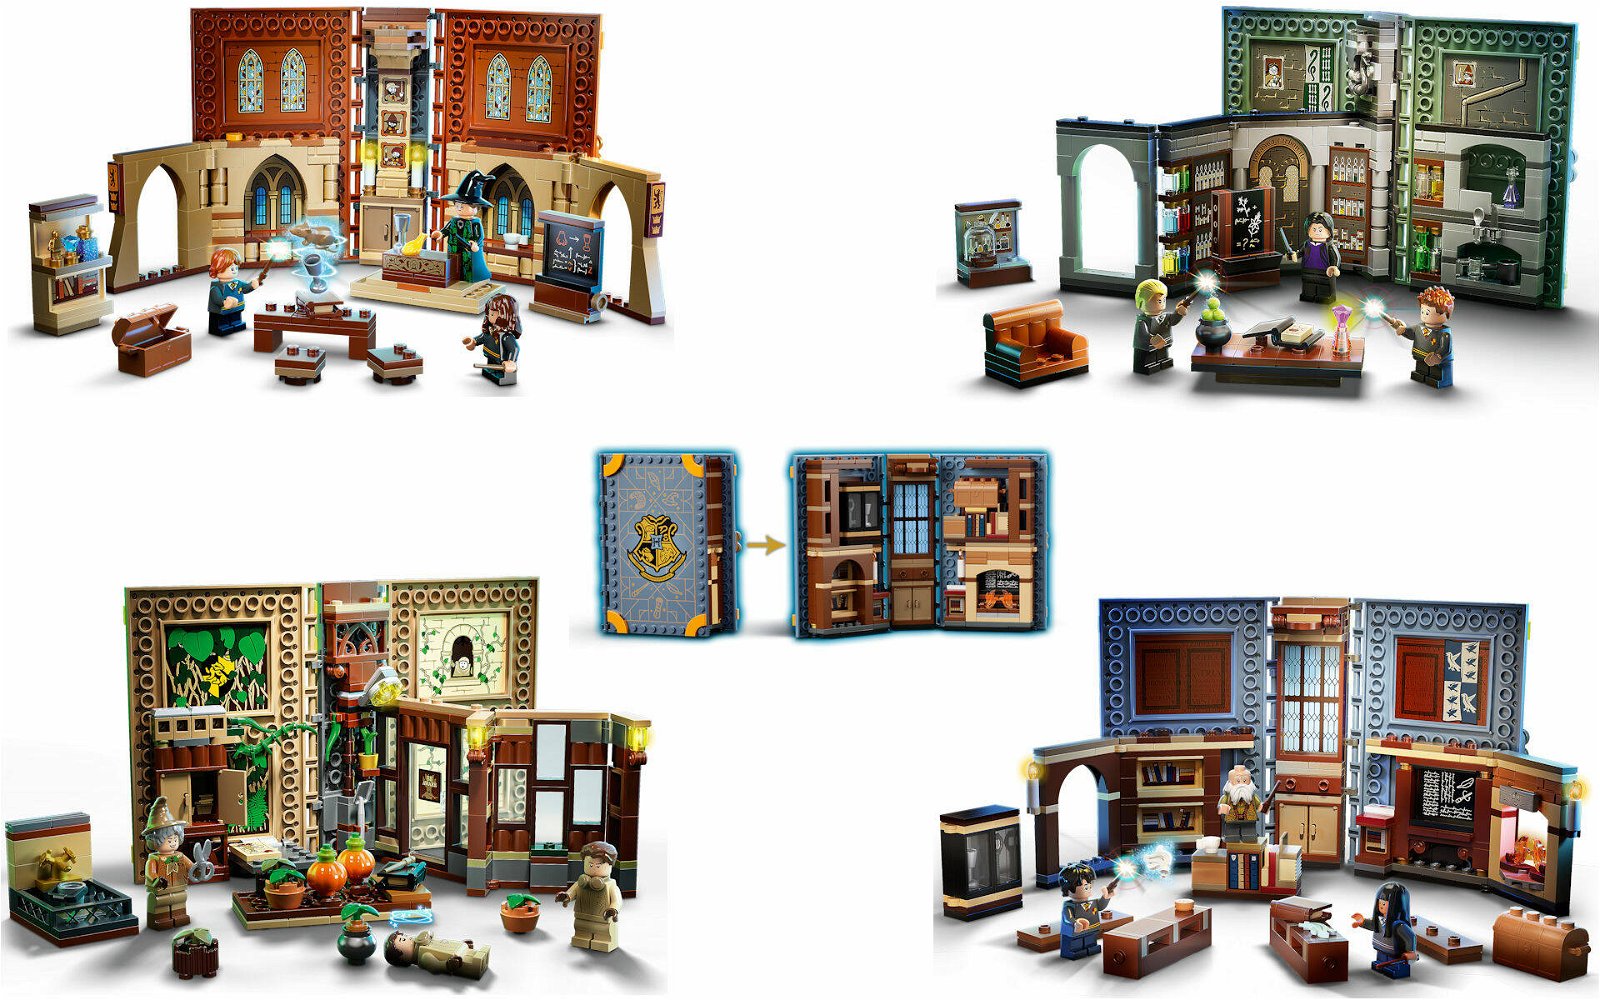 Immagine di LEGO Harry Potter: i nuovi set delle classi di Hogwarts già su LEGO Shop@Home